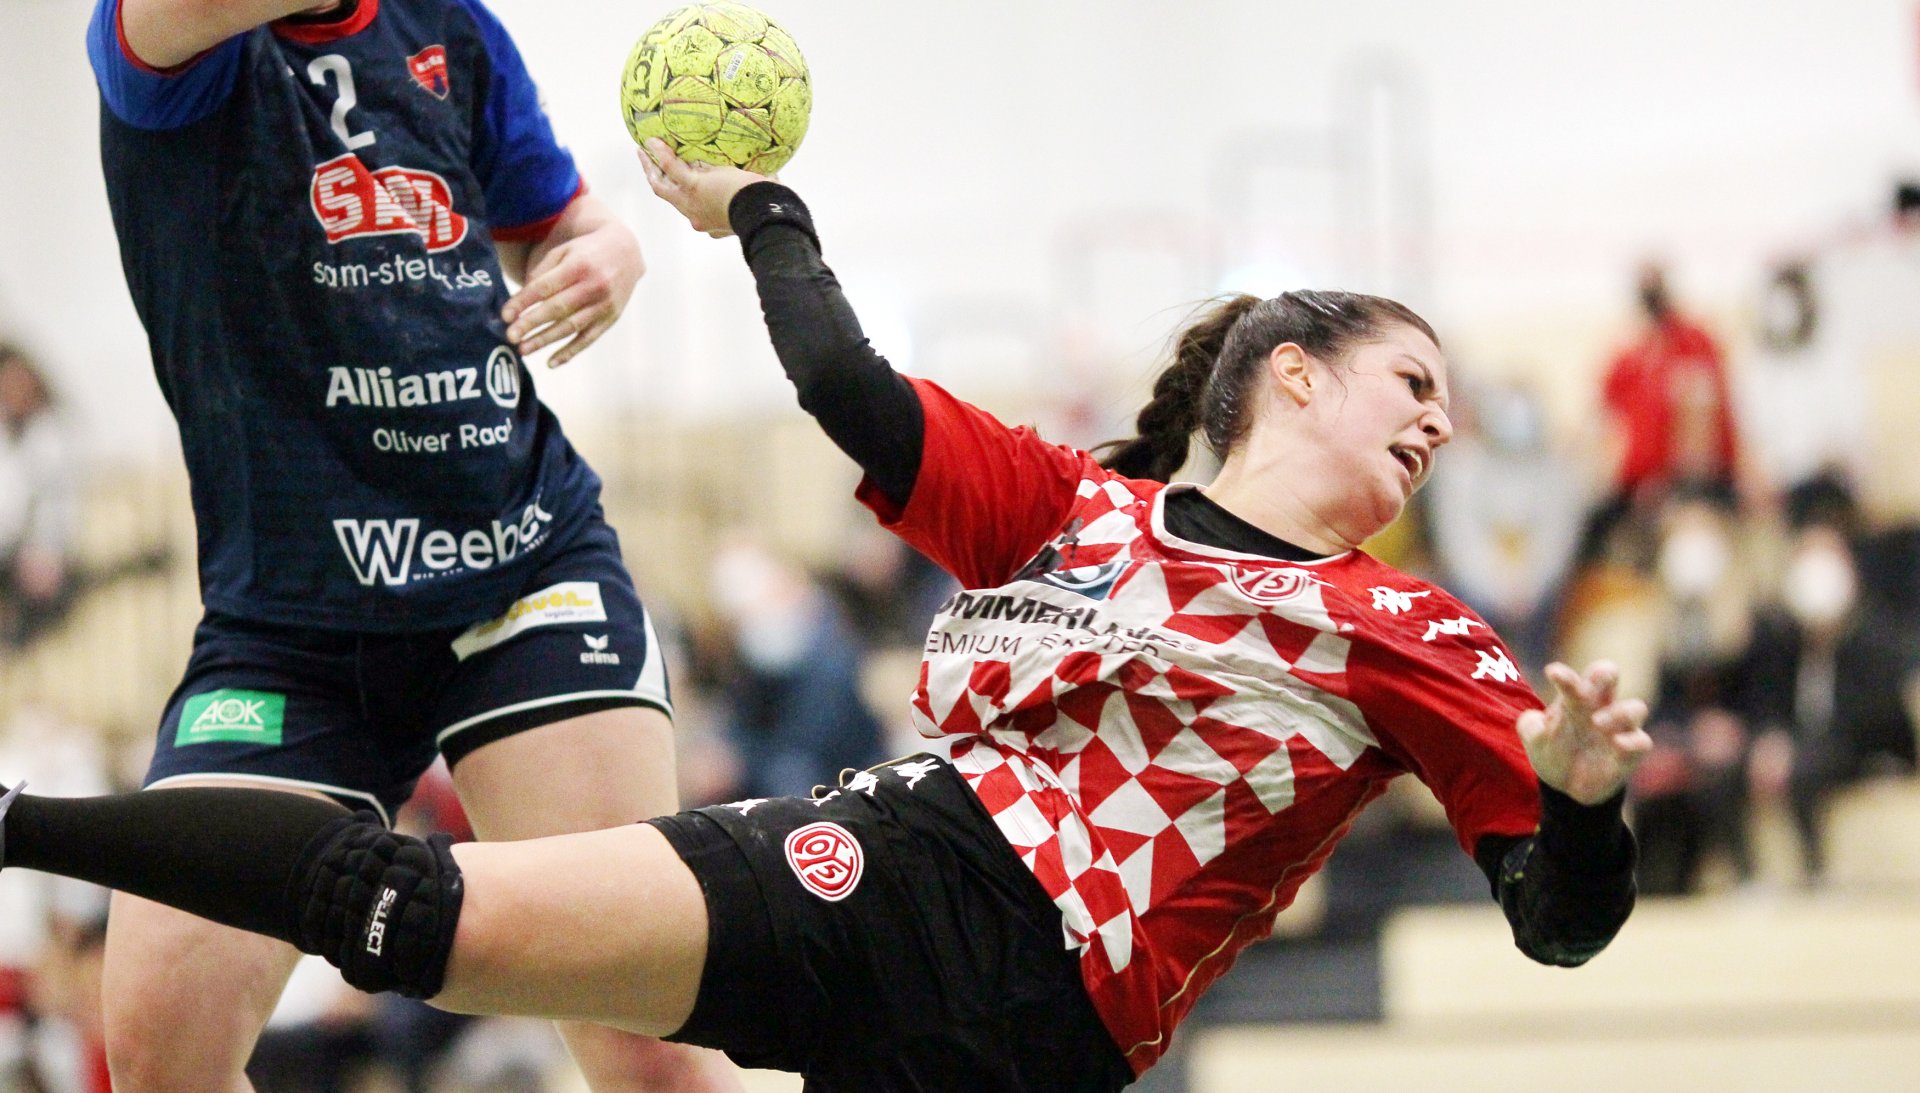 Auch nach dem Bundesligaabstieg stellt der FSV Mainz 05 die klassenhöchste Mannschaft im rheinland-pfälzischen Handball. Kreisläuferin Sophia Michailidis und ihr Team absolvieren bisher eine sehr durchwachsene Zweitligasaison. 